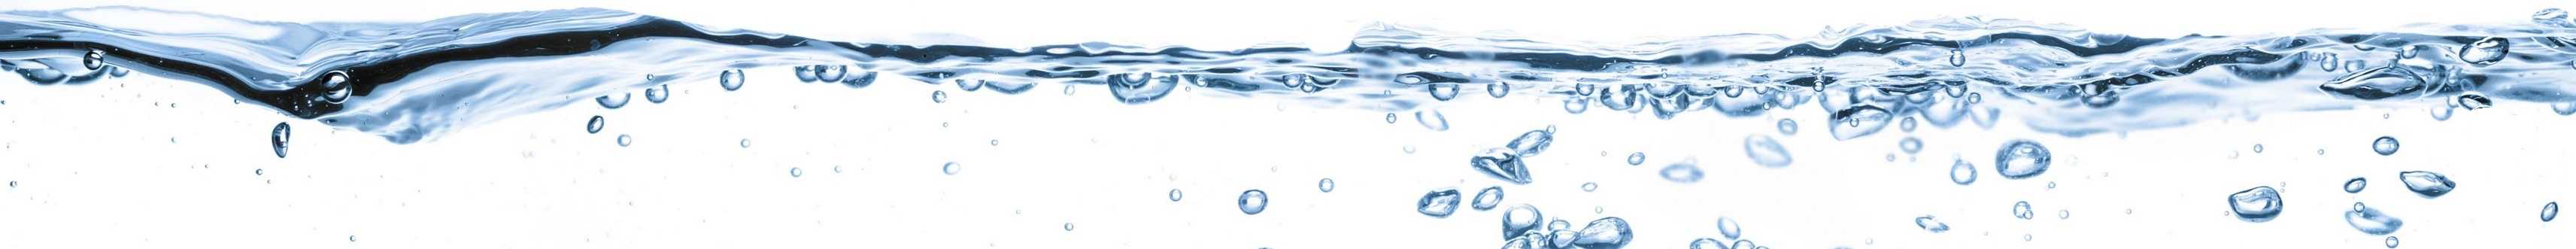 Wasserfilter-kaufen-Wasserfiltersystem-kaufen-Wasserfilteranlagen-kaufen-Filter-Wasserhahn-Wasserfilter-Trinkwasser-Wasserfilter-Leitungswasser-Osmose-Wasserfilter-Osmoseamlage-Trinkwasser-kaufen-Wasserlotse